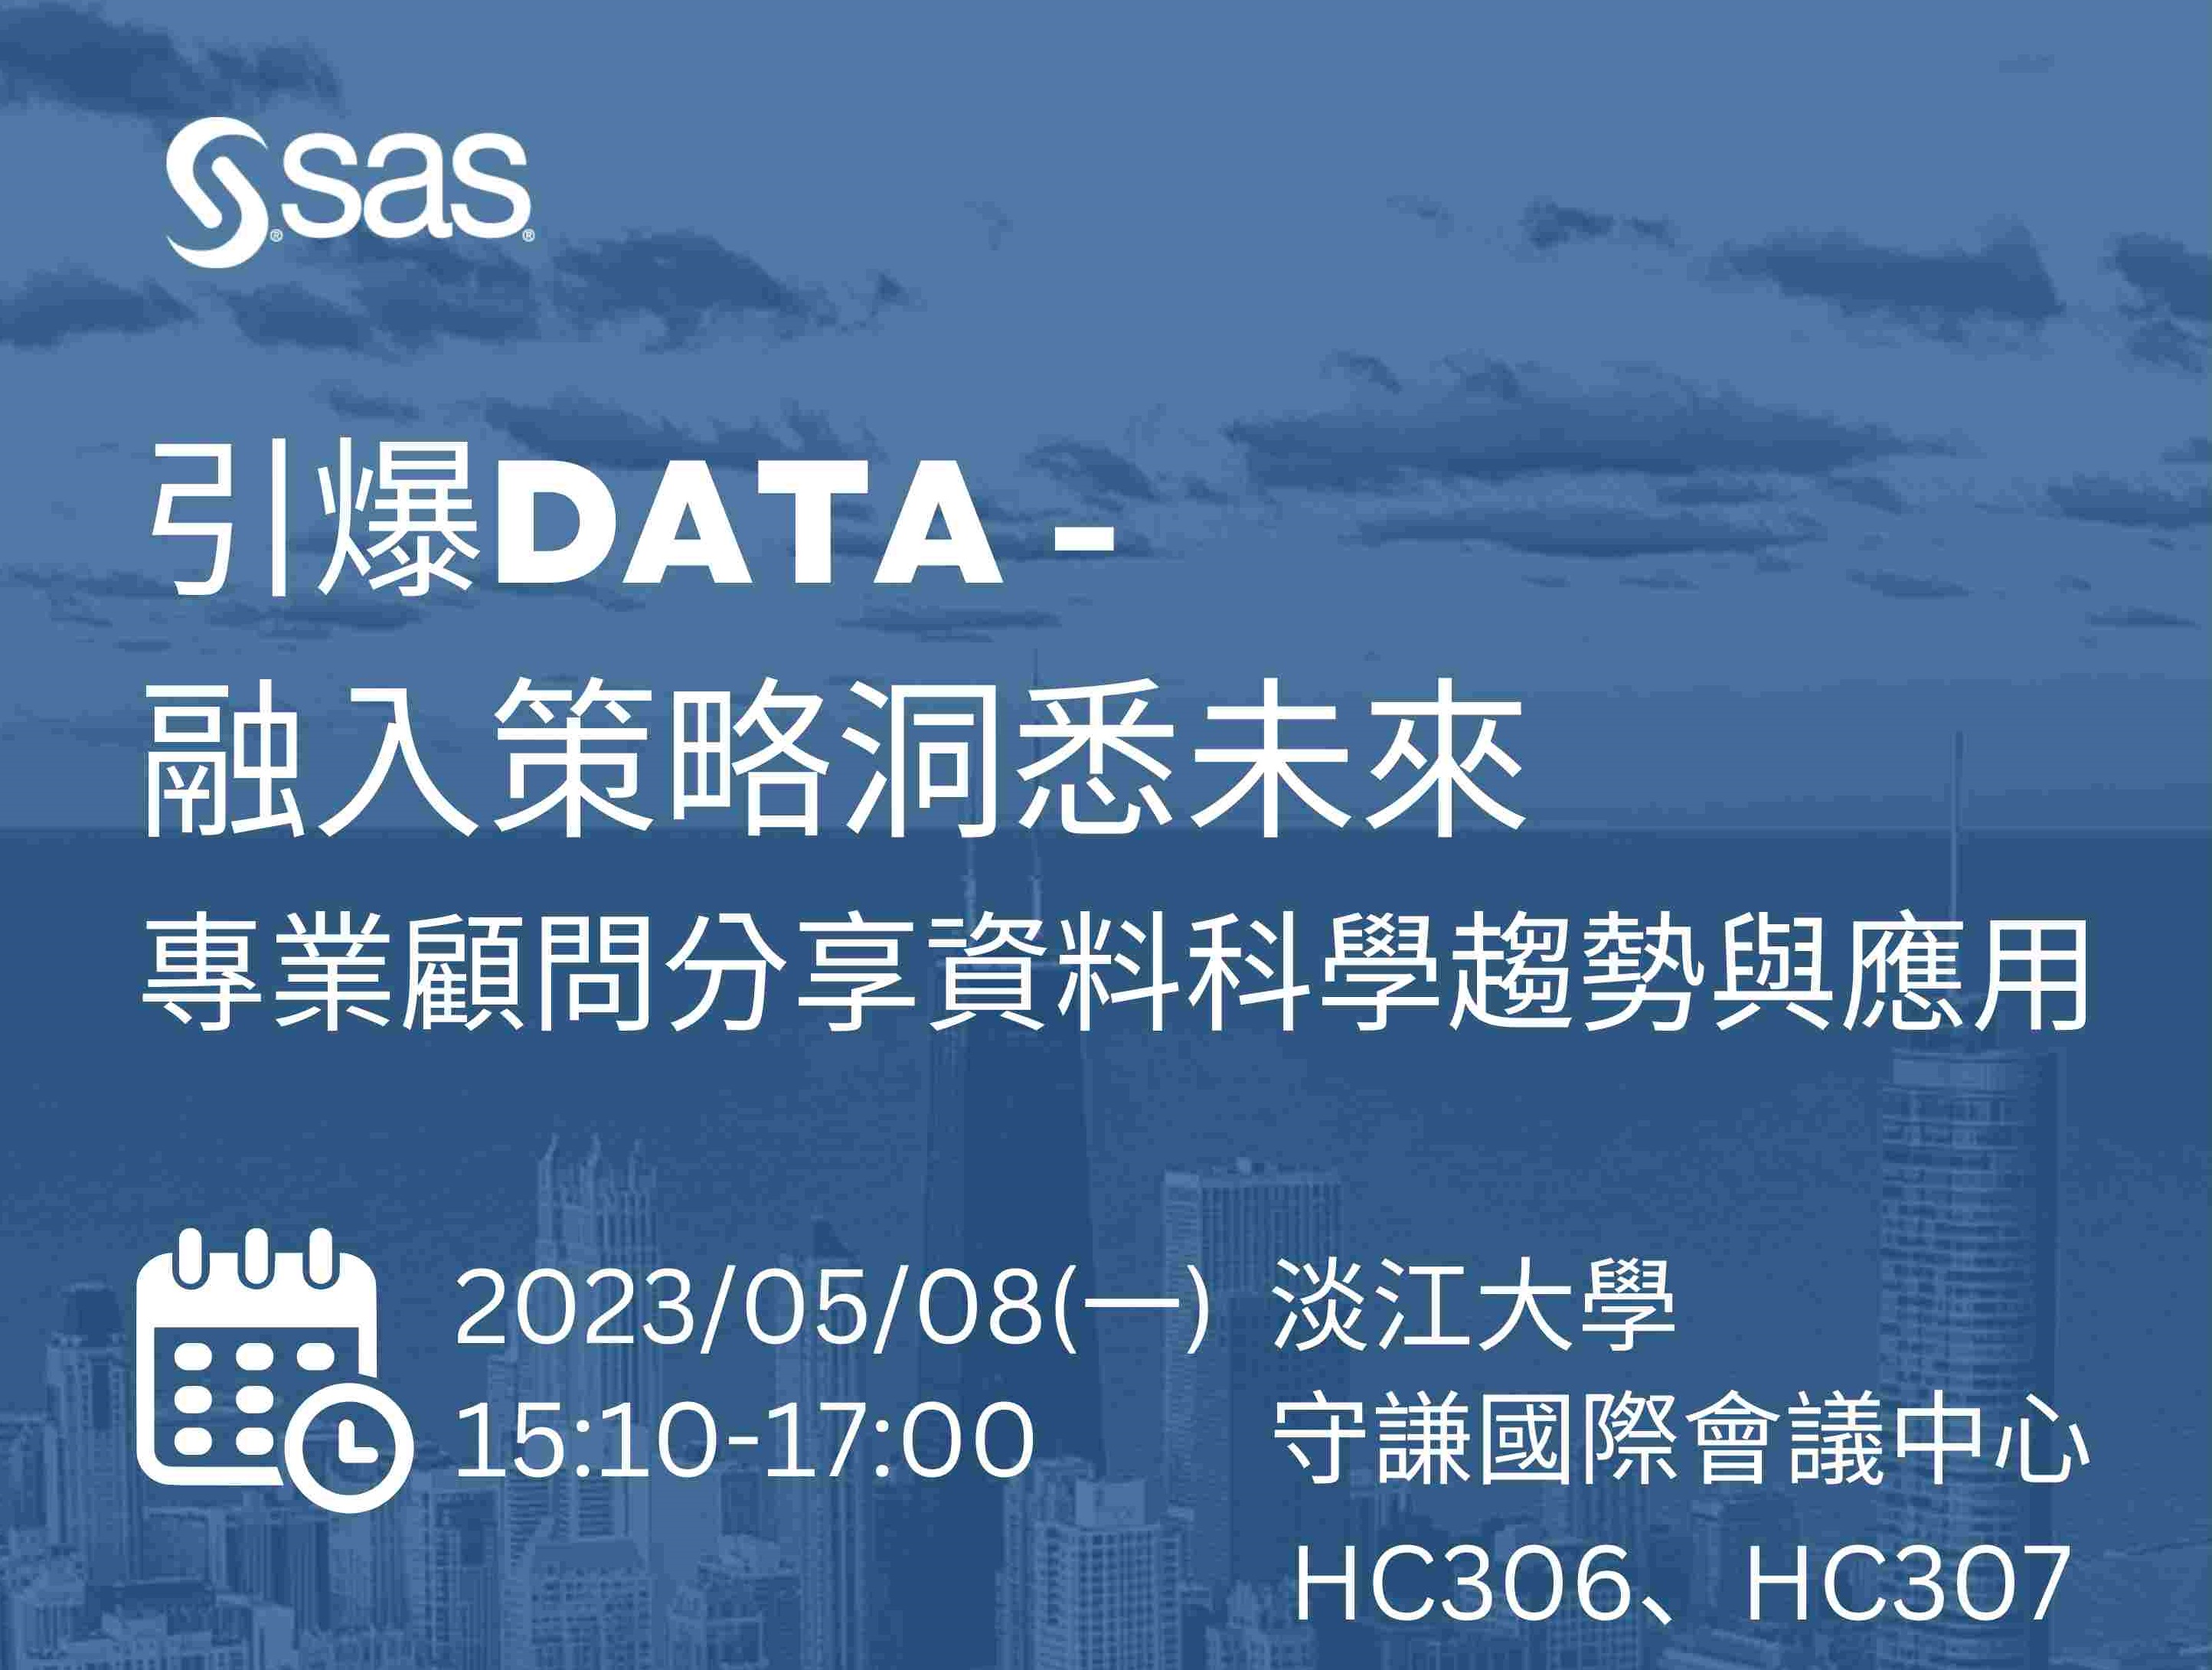 2023-05-08引爆DATA-融入策略洞悉未來  專業顧問分享資料科學趨勢與應用